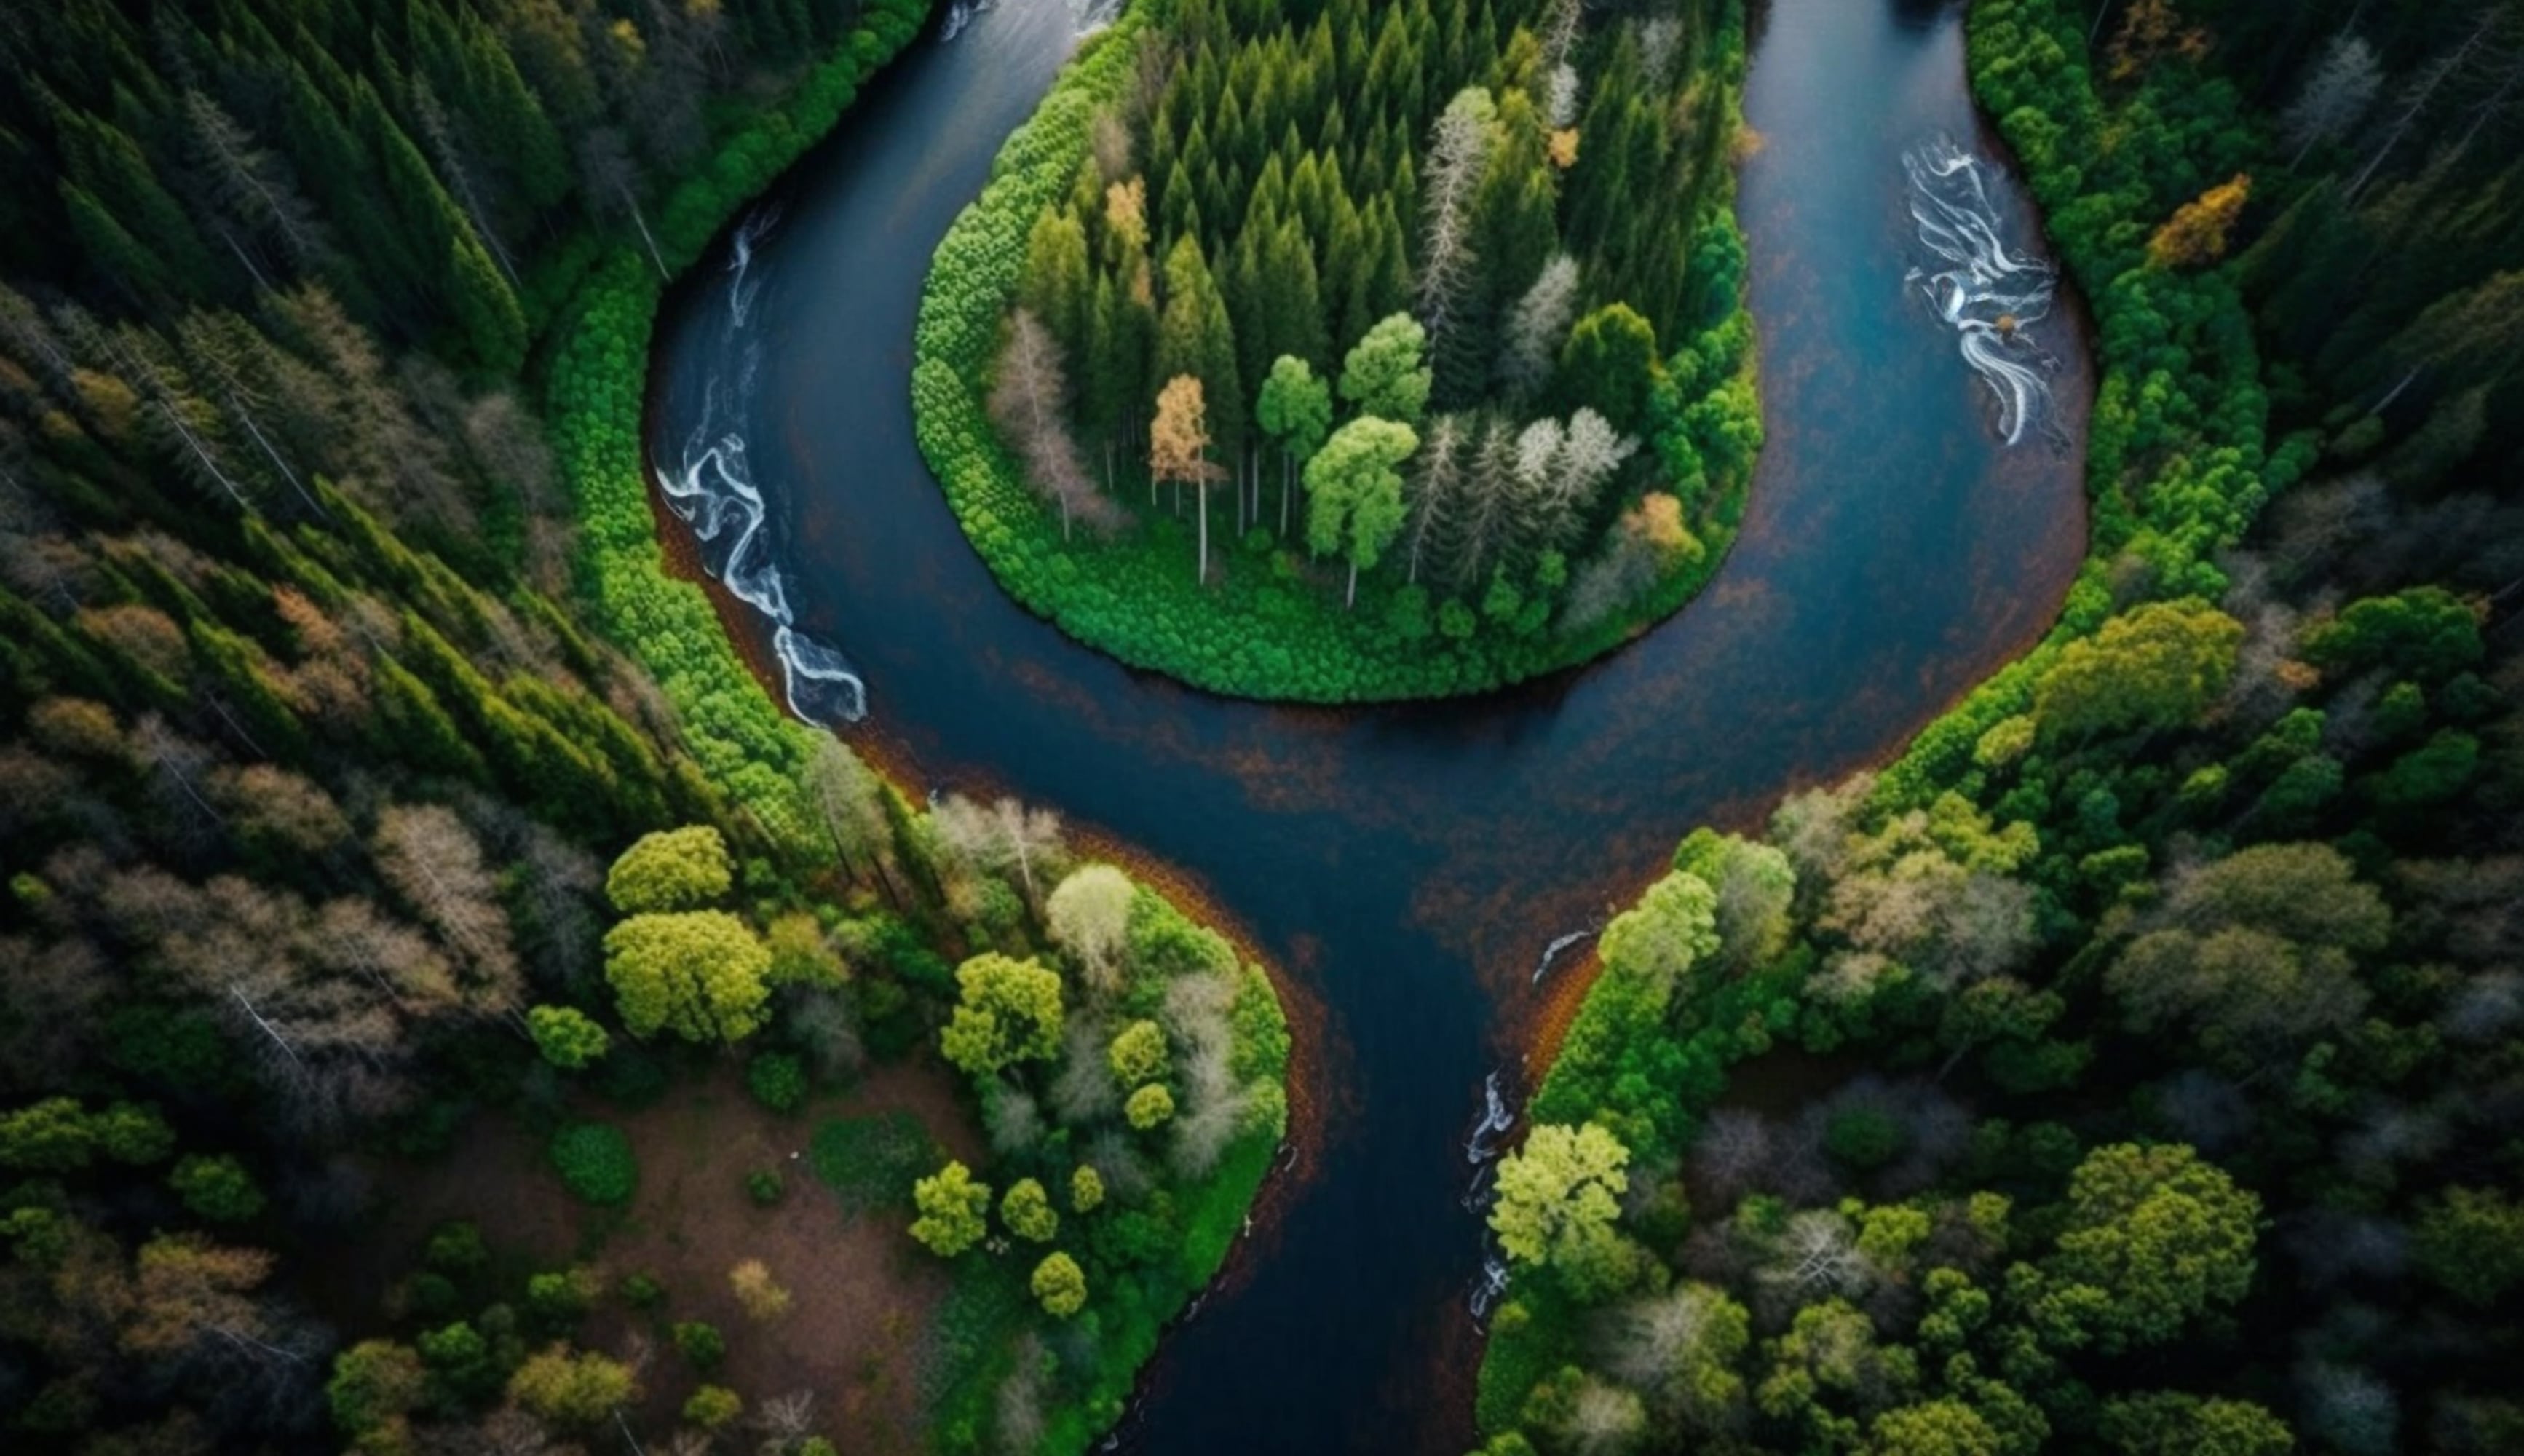 Río atravesando bosque